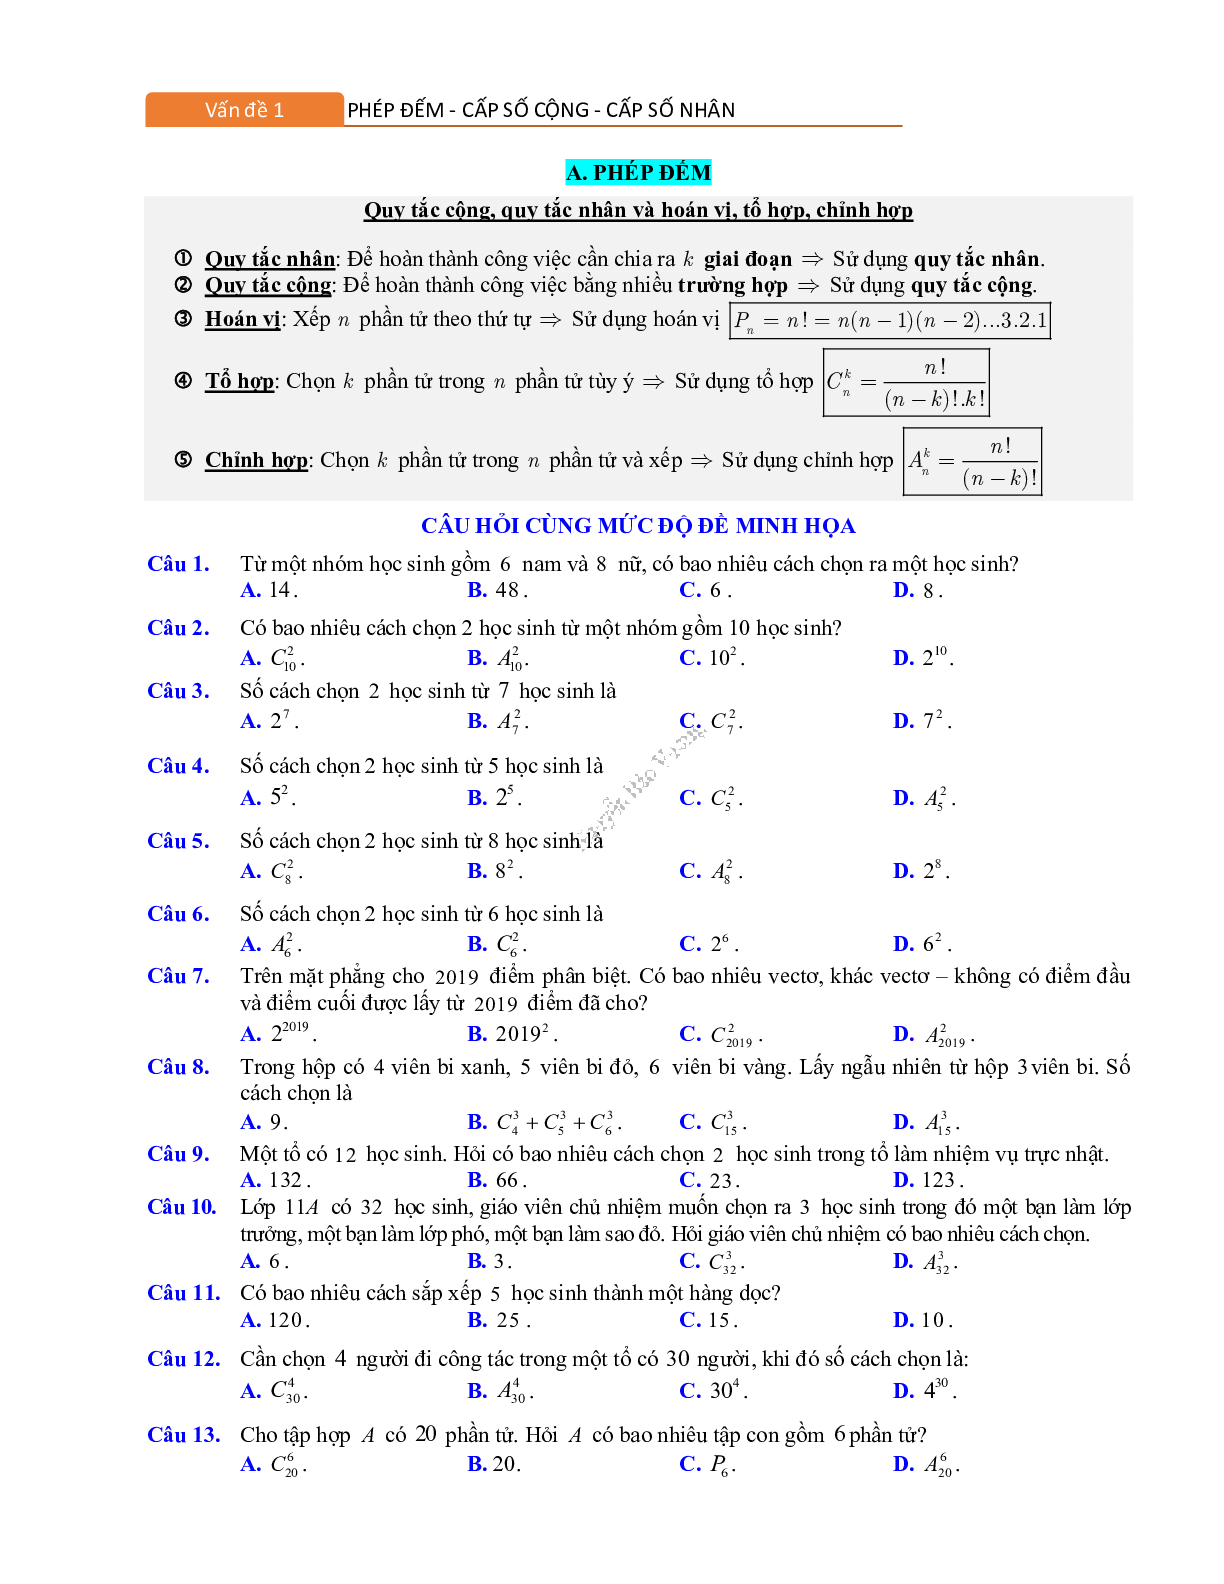 Phương pháp giải về Phép đếm, cấp số cộng và cấp số nhân 2023 (lý thuyết và bài tập) (trang 1)